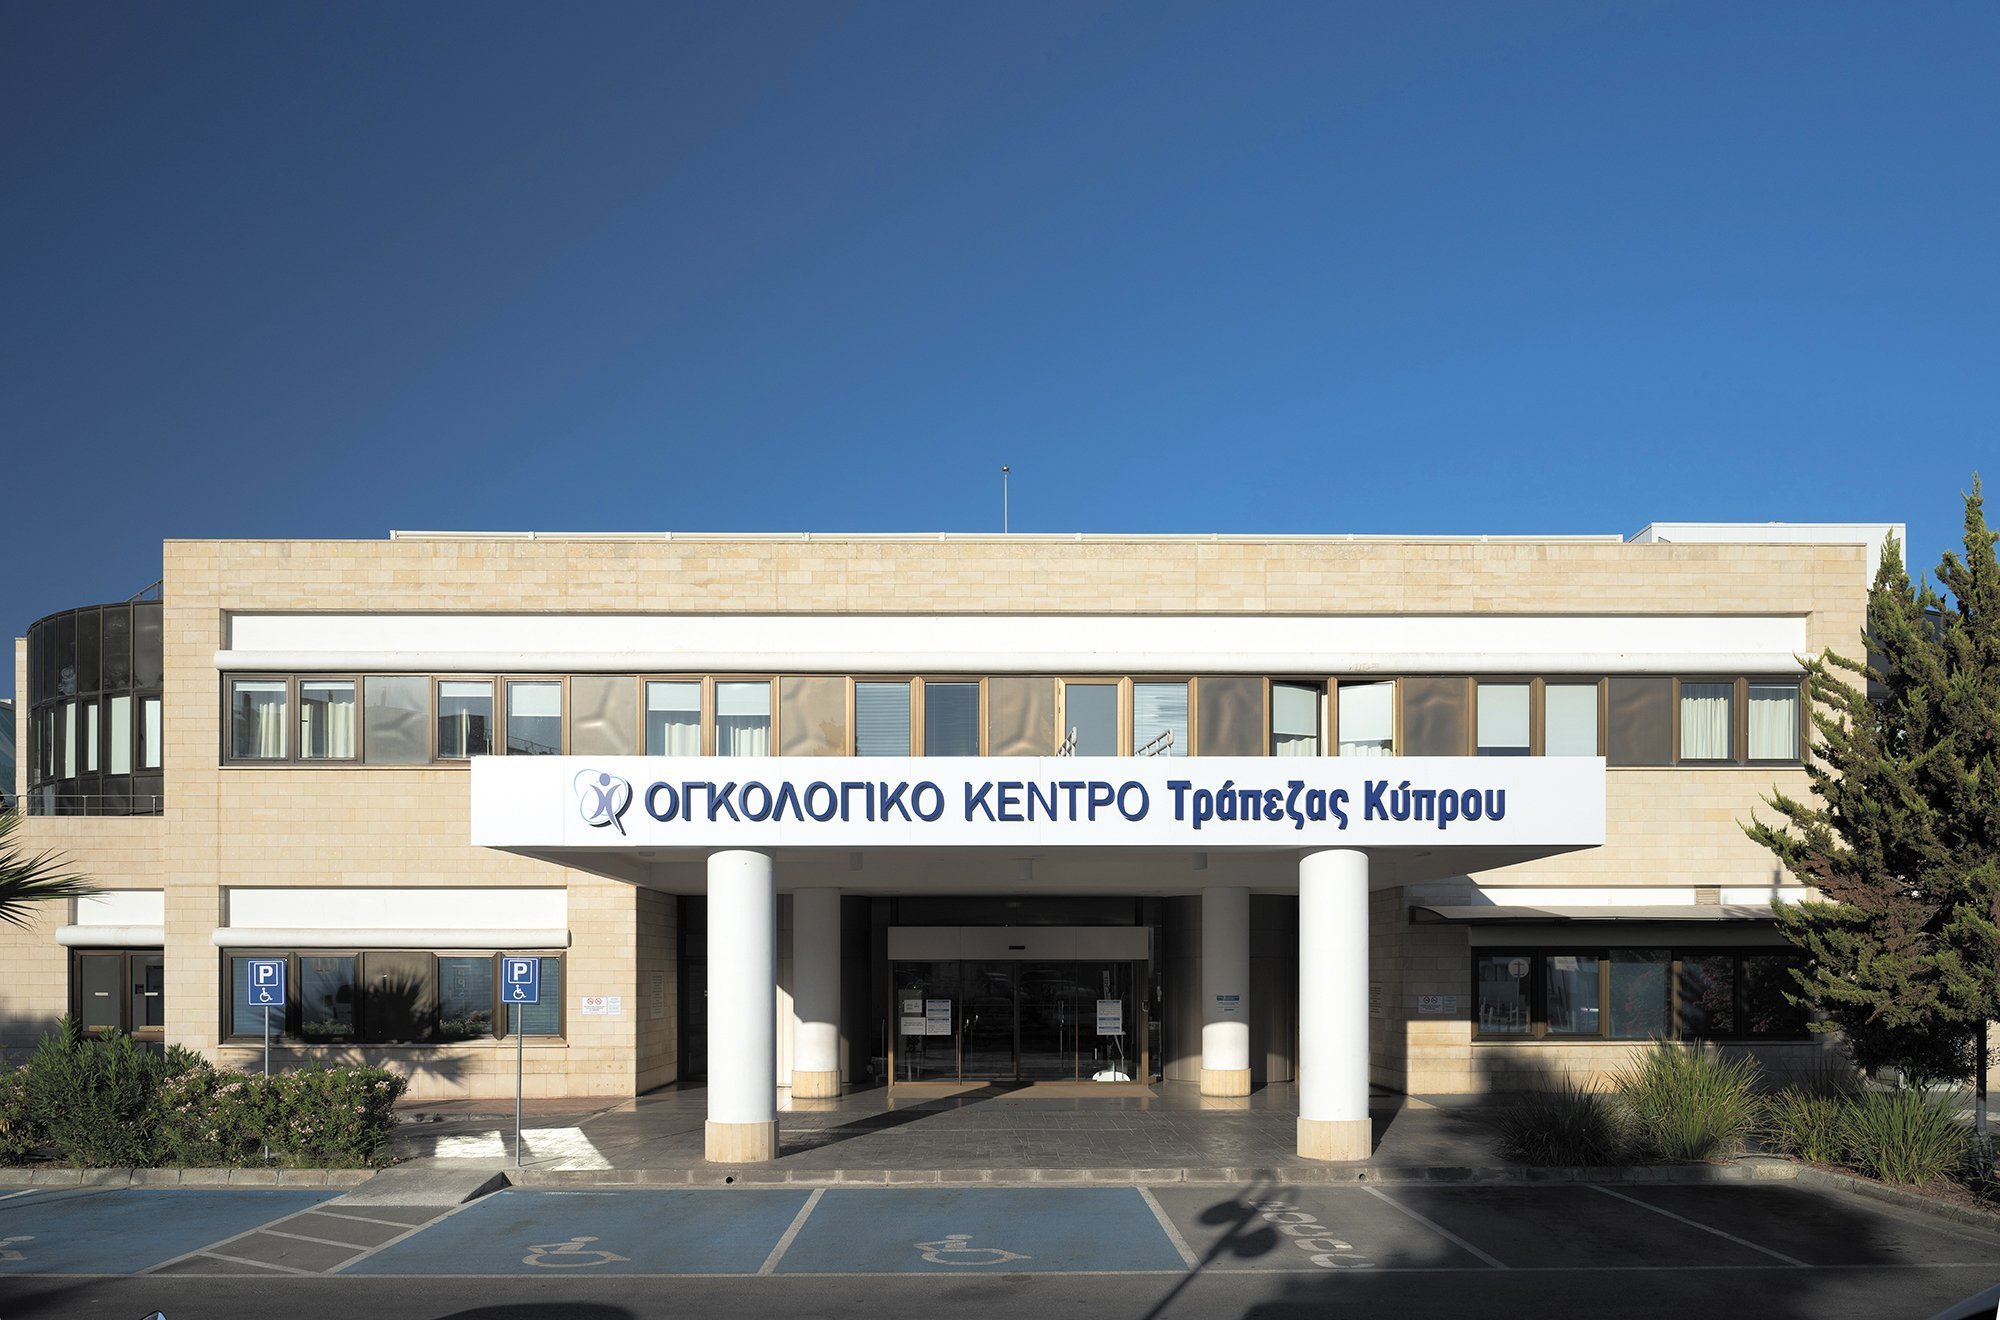 Το Αποτύπωμα 25 Χρόνων-Ογκολογικό Κέντρο Τράπεζας Κύπρου: Από το παρελθόν στο μέλλον